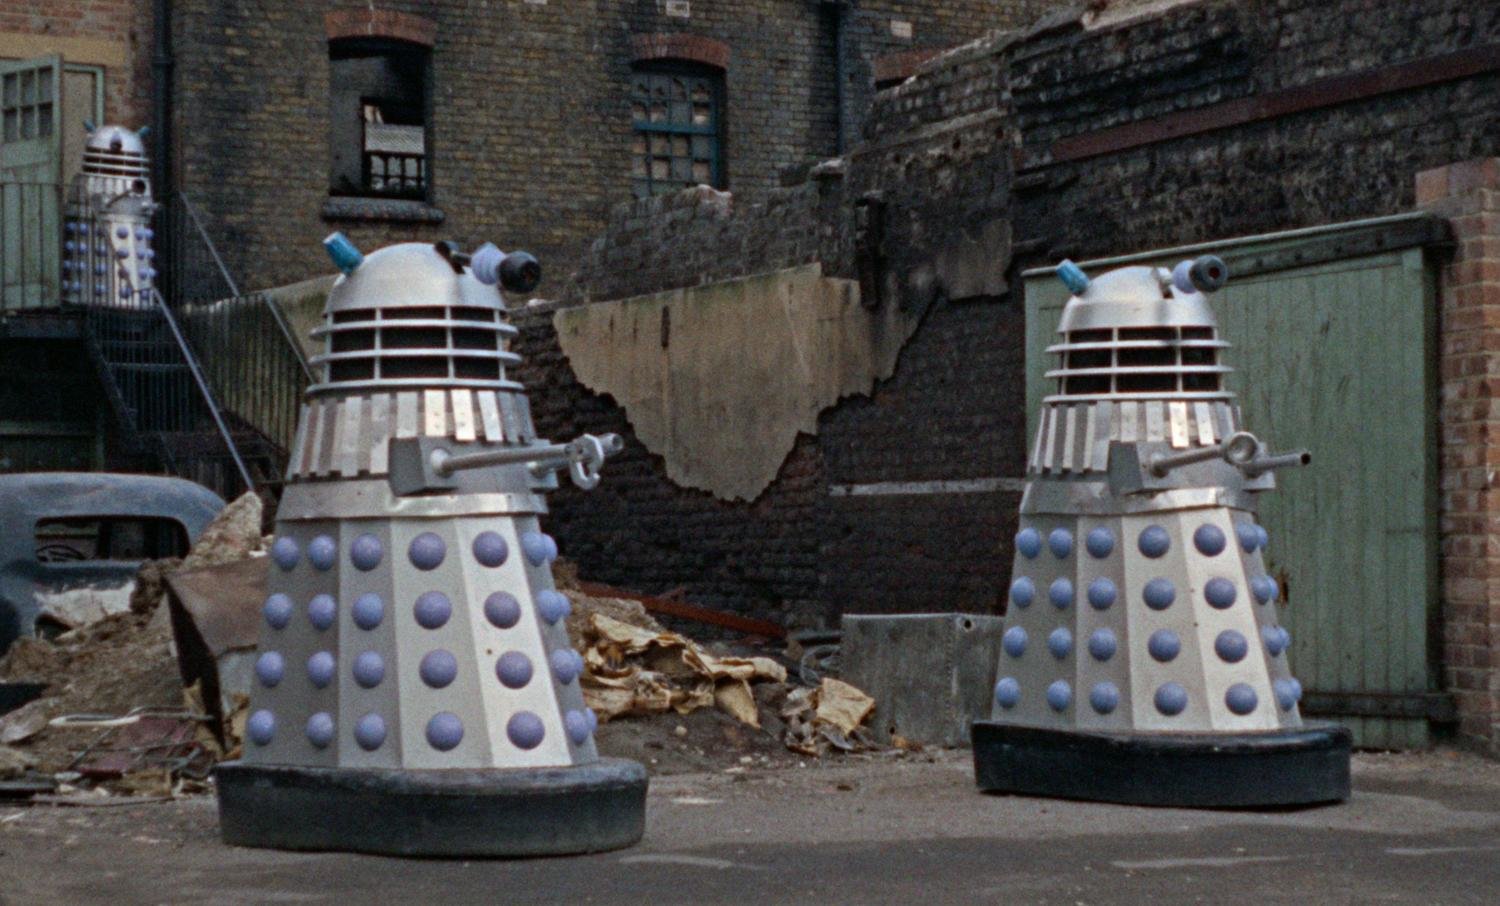 Dr. Who: Die Invasion der Daleks auf der Erde 2150 n. Chr. - Limited Steelbook Edition (4K Ultra HD)